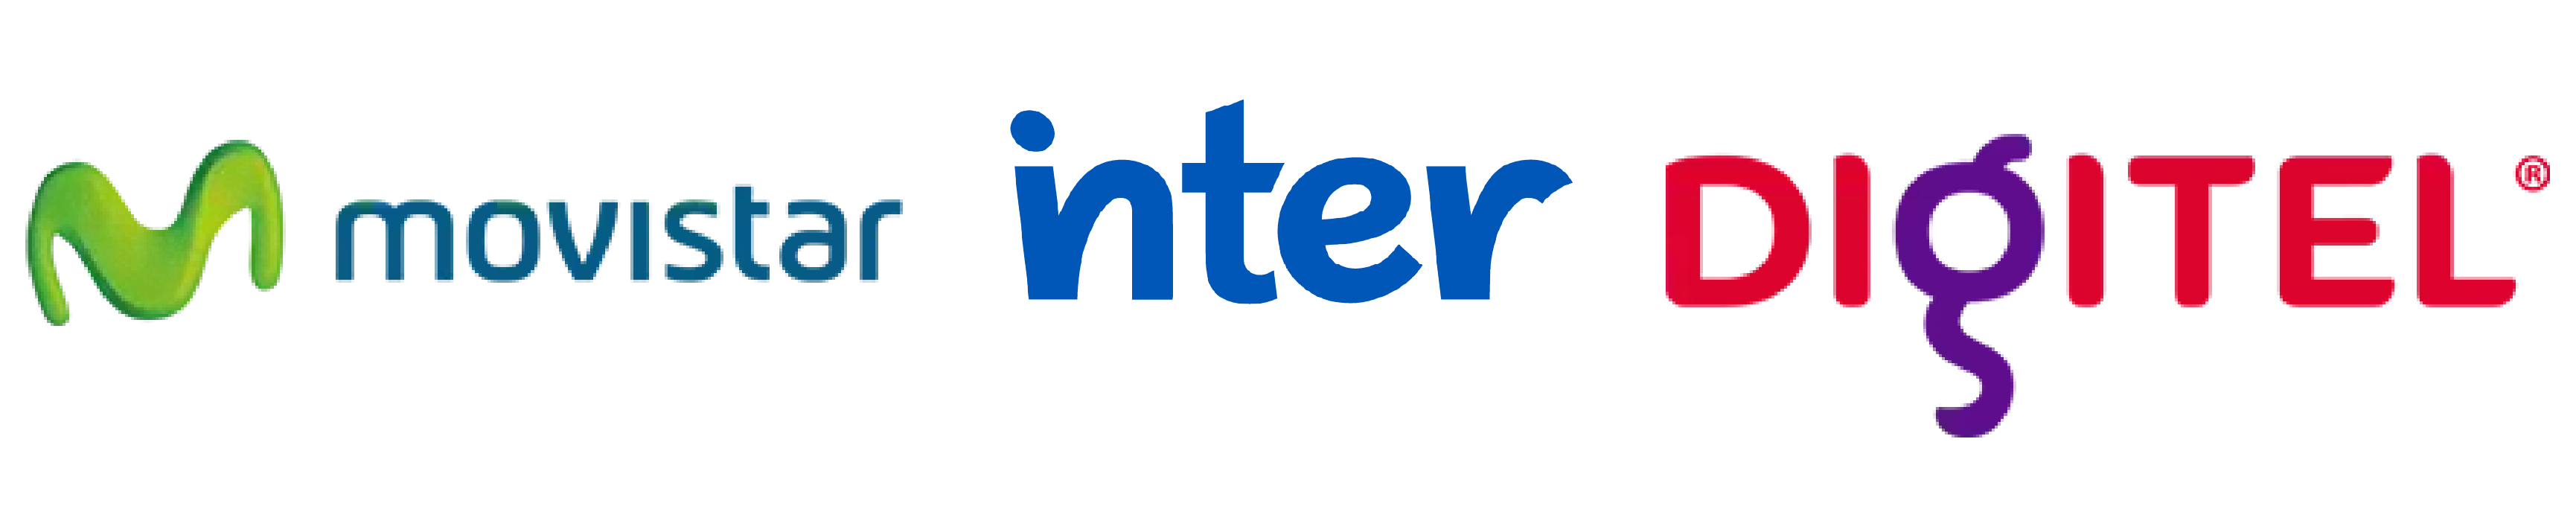 logos-movistar-inter-digitel